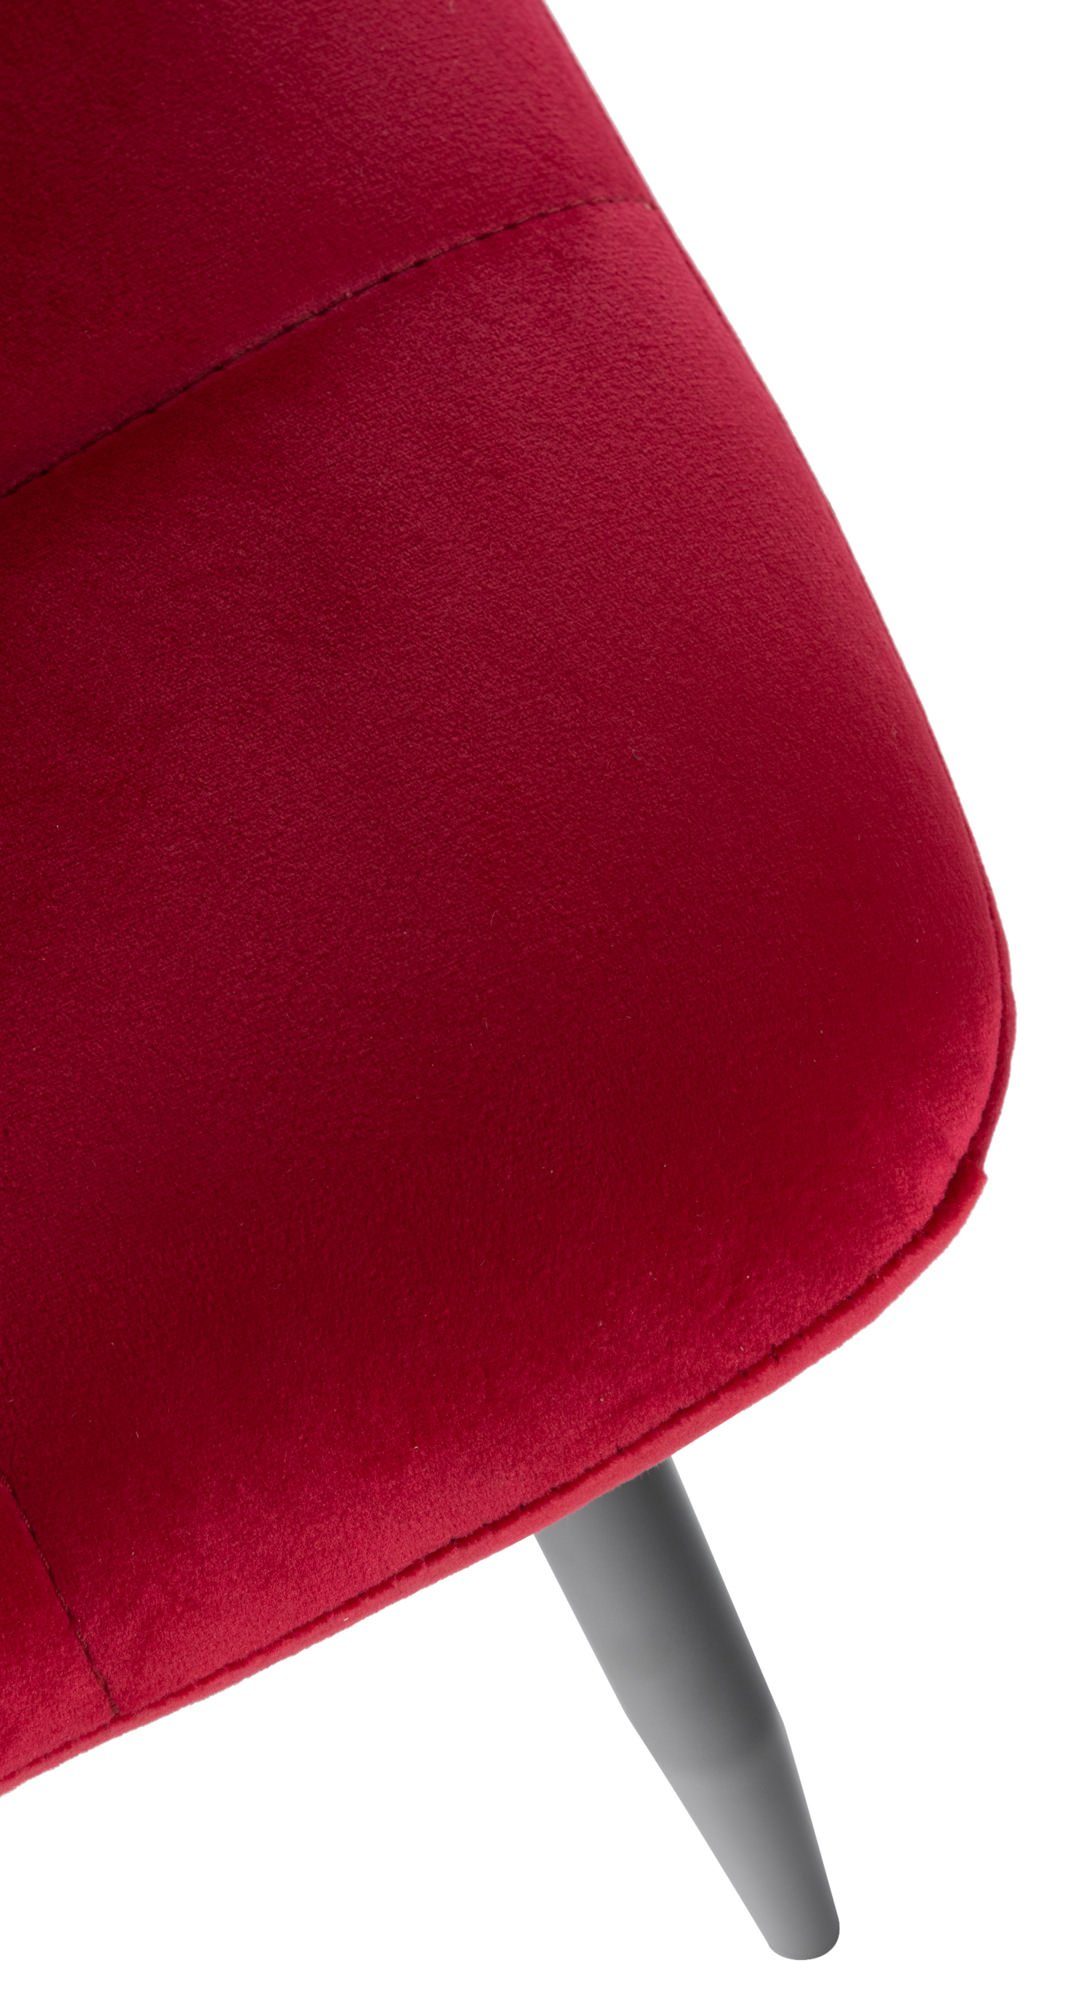 - Gestell: rot (Küchenstuhl schwarz Atina Konferenzstuhl Metall mit - Sitzfläche: Esszimmerstuhl Wohnzimmerstuhl), TPFLiving Samt Sitzfläche - gepolsterter hochwertig